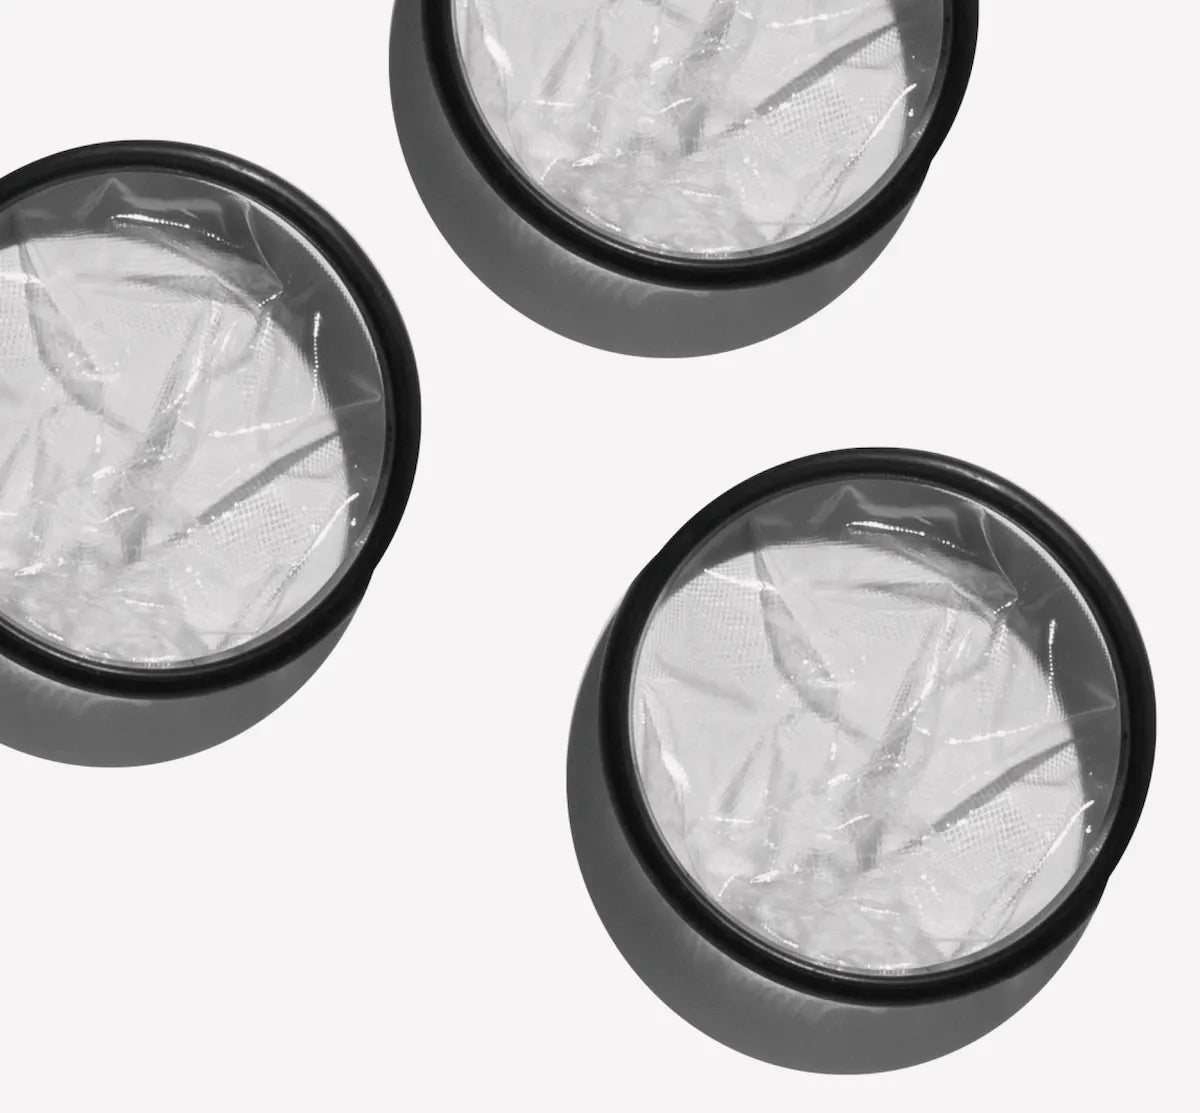 Three Flex Reusable Menstrual discs on a white background